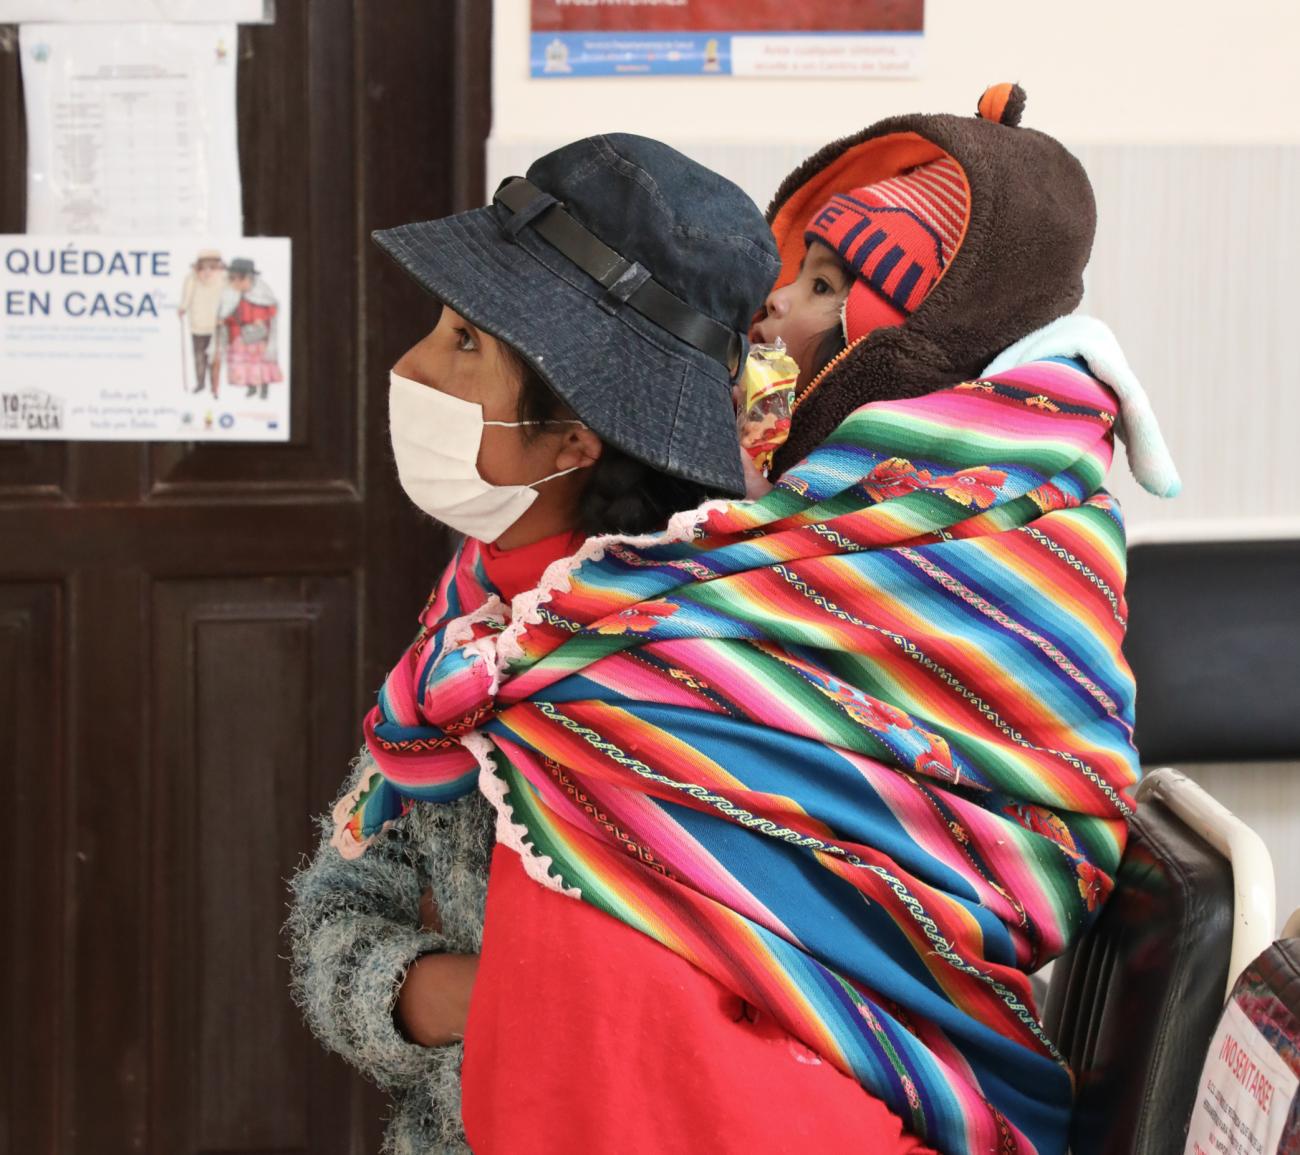 Foto de una mujer boliviana, con un fular tradicional con el cual carga en su espalda a un niño pequeño, y ambos están esperando en un pasillo de un centro de salud local.